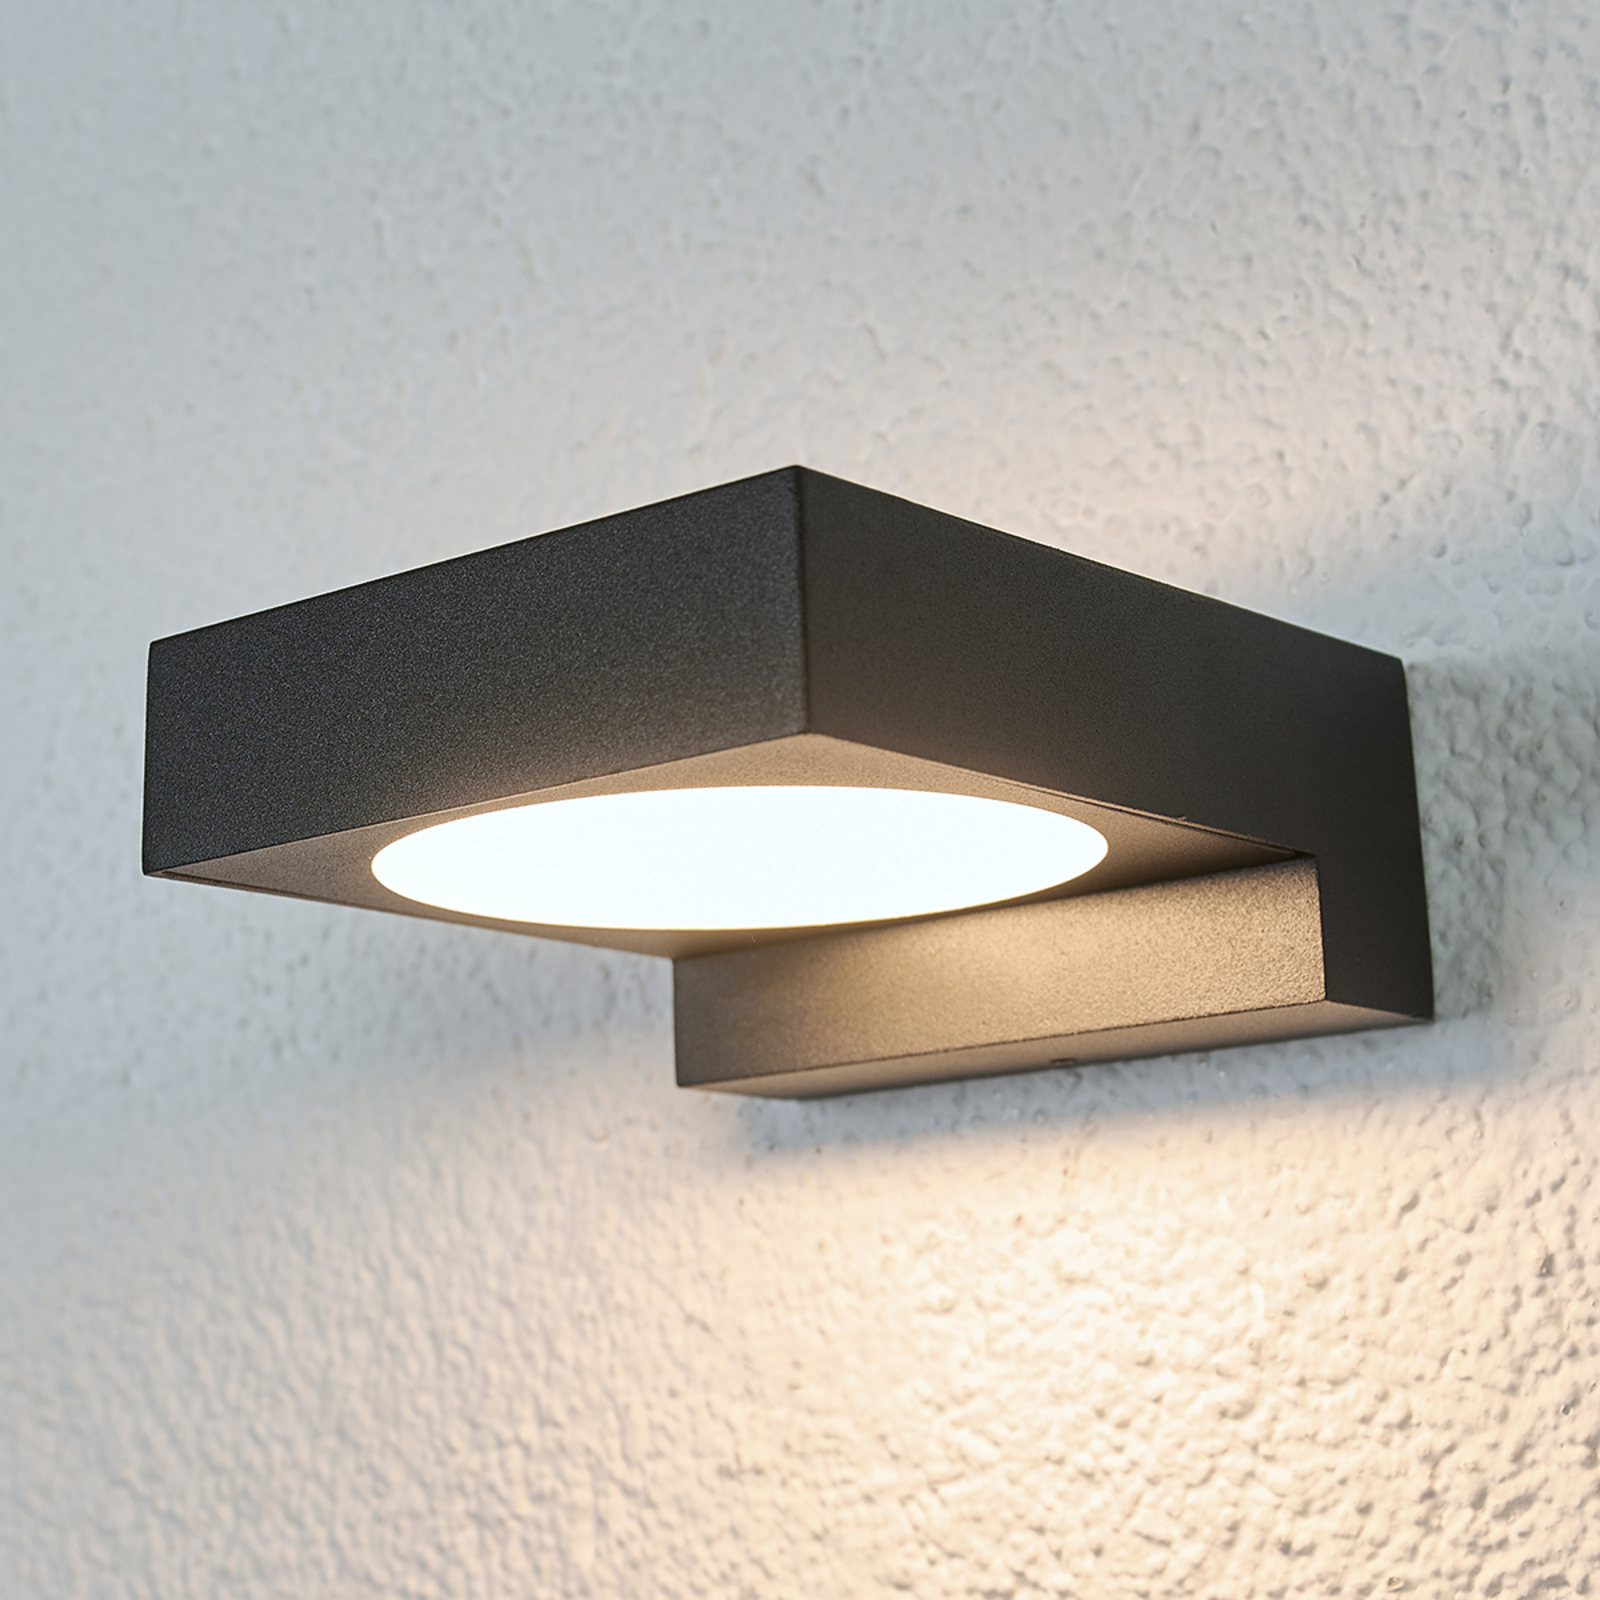 LED lámpara de pared gris Grey lámpara interior exterior lámpara de pared lámpara gu10 230v 